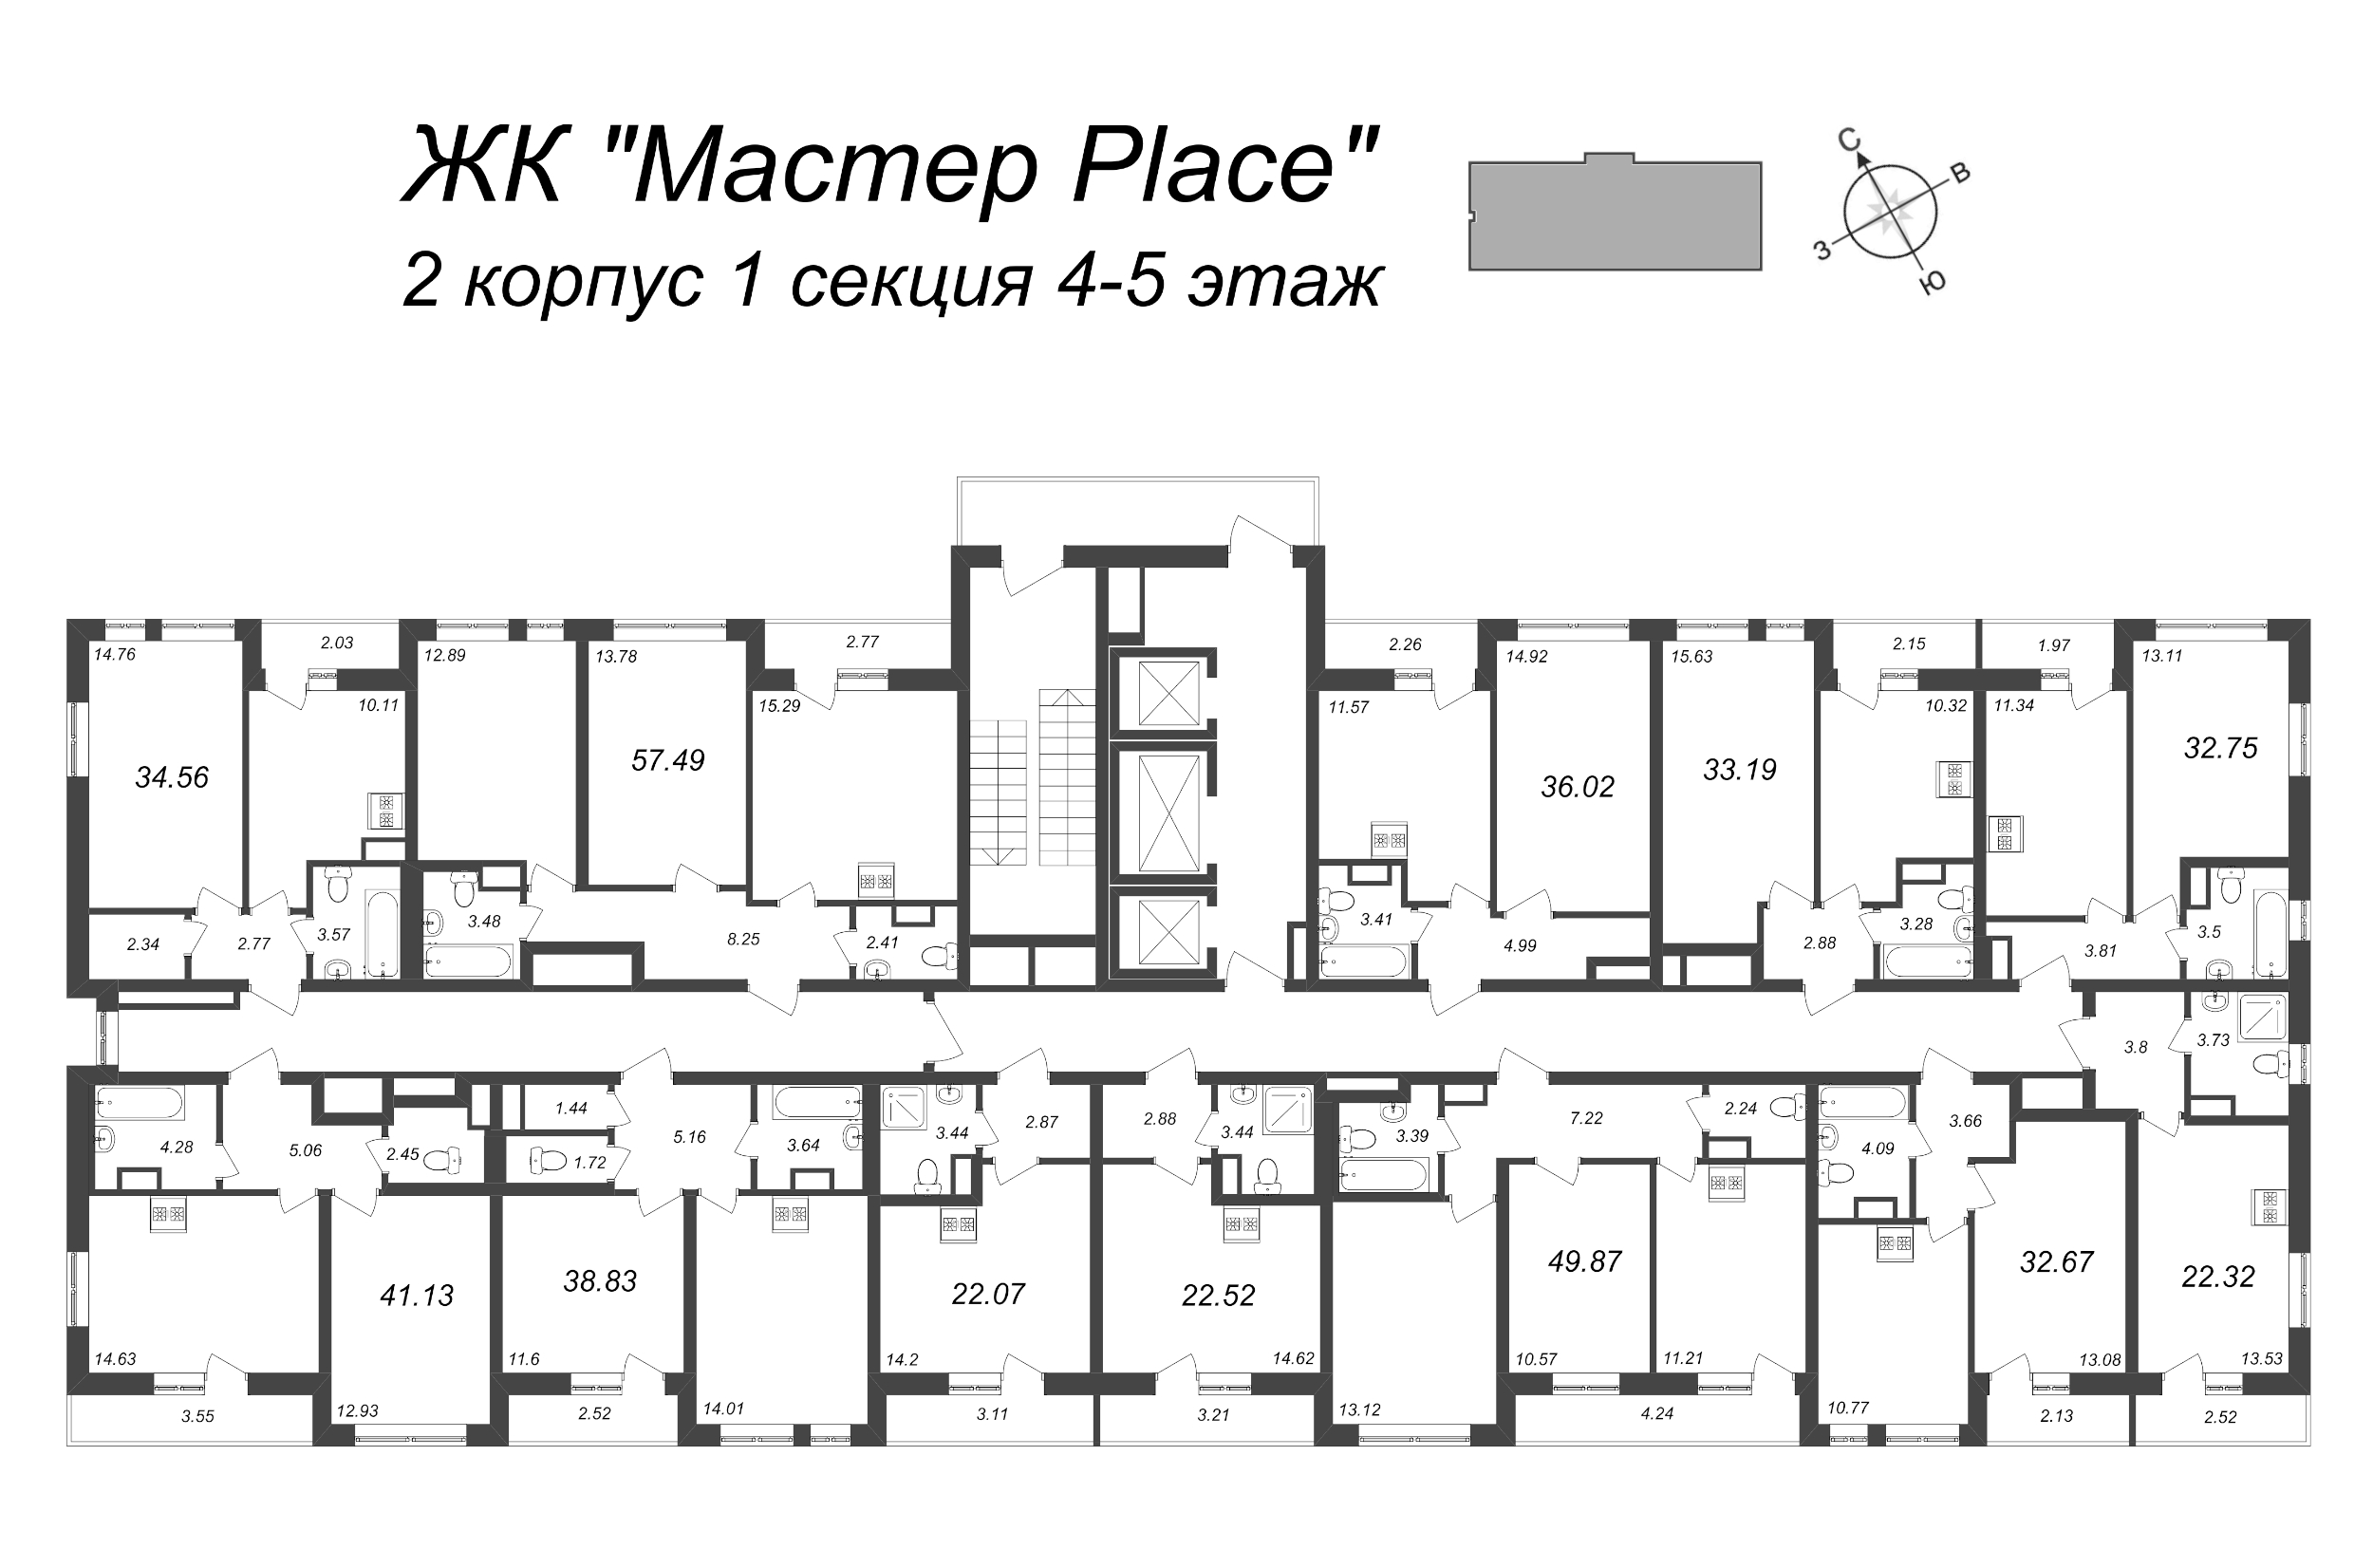 2-комнатная (Евро) квартира, 41.13 м² в ЖК "Master Place" - планировка этажа